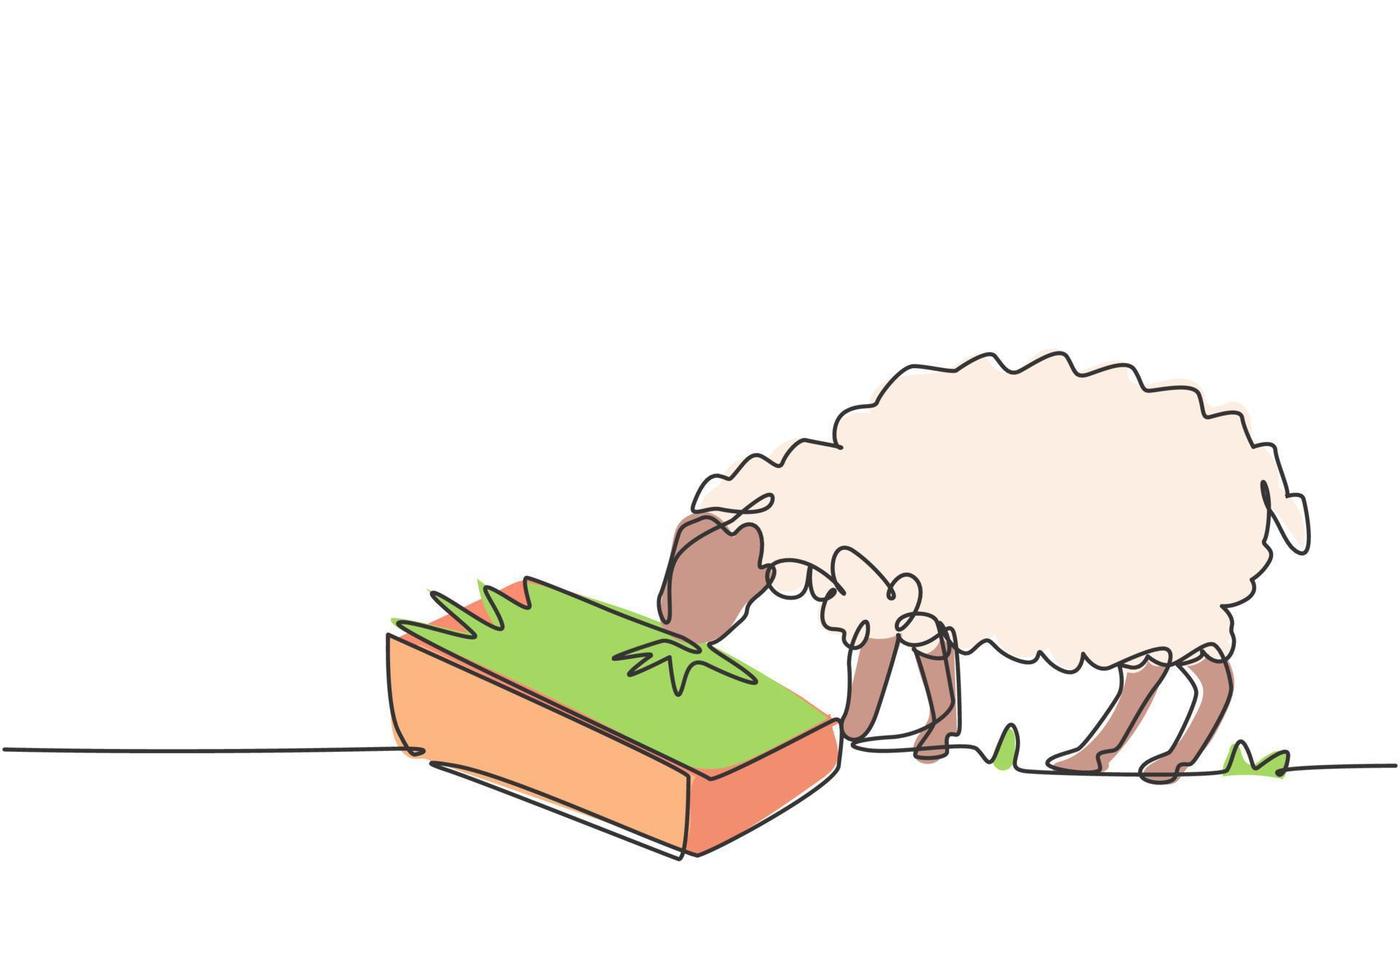 un singolo disegno a tratteggio delle pecore vengono nutrite per essere sane e produrre il miglior latte e carne. concetto minimo di sfida agricola. moderna linea continua disegnare grafica vettoriale illustrazione.